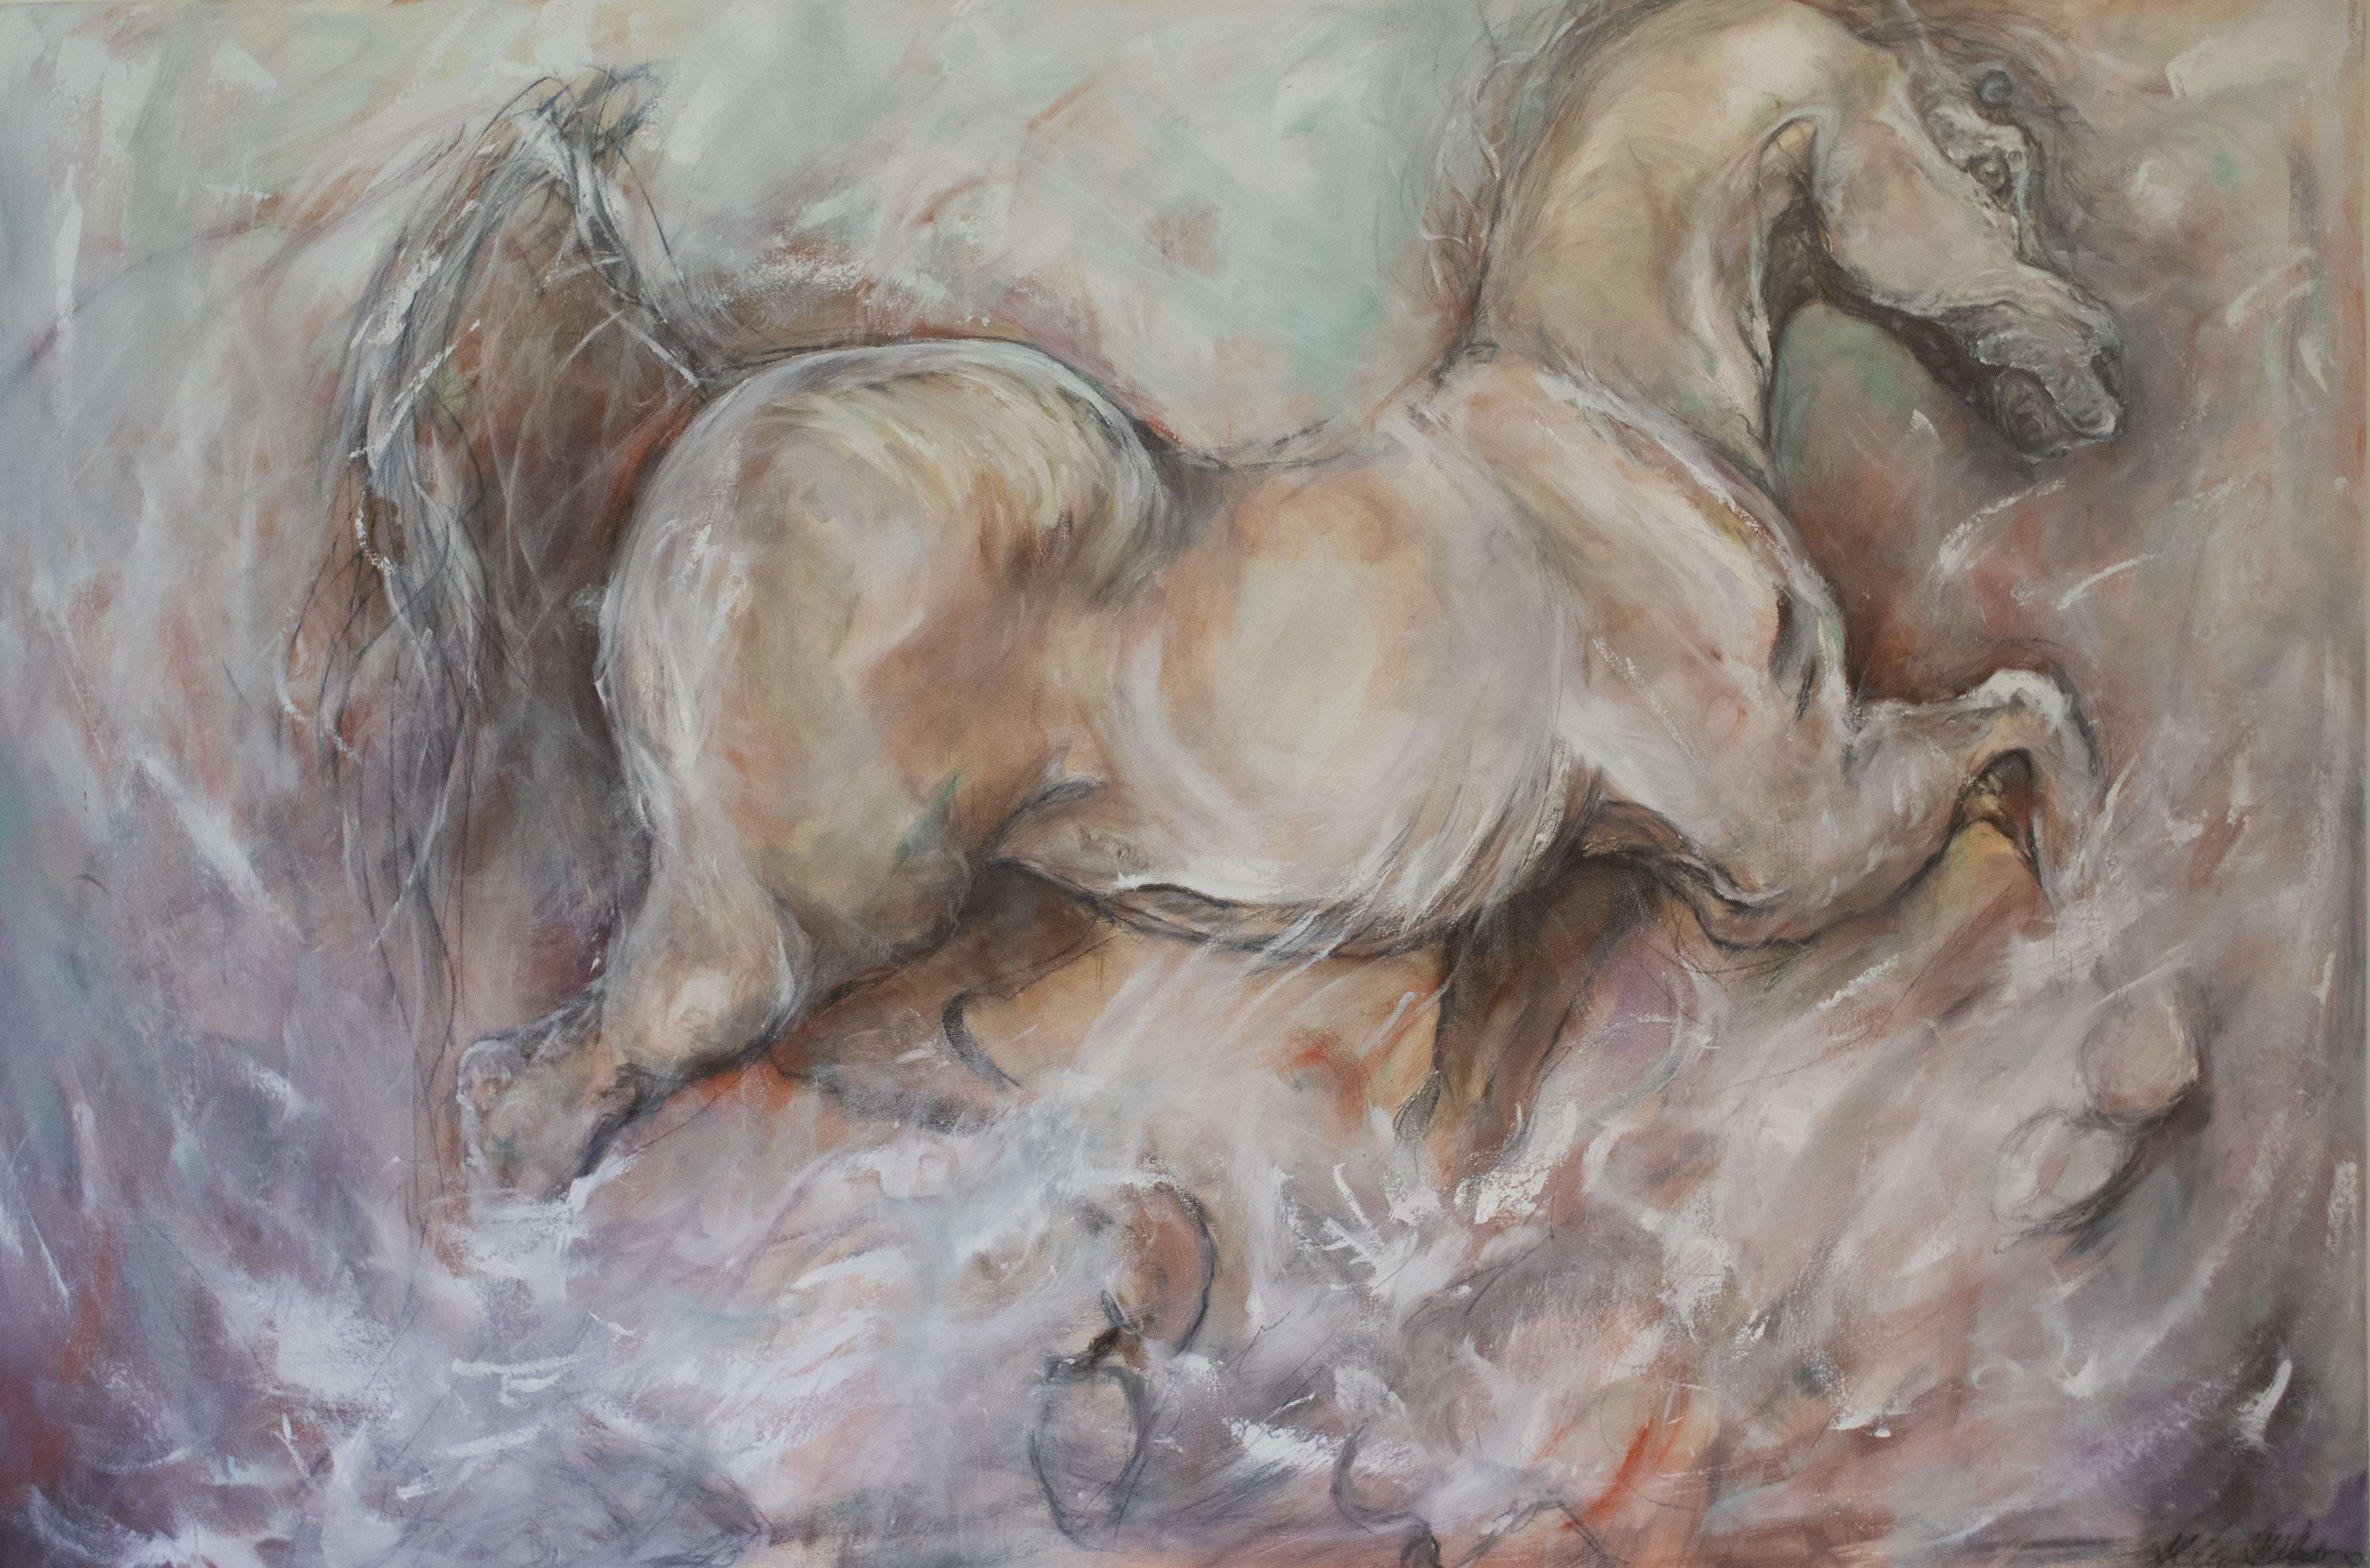 Animal Painting Abbie Gibson - Dans d'élégantes couleurs neutres, une peinture gestuelle contemporaine de chevaux suscite l'Elegance.